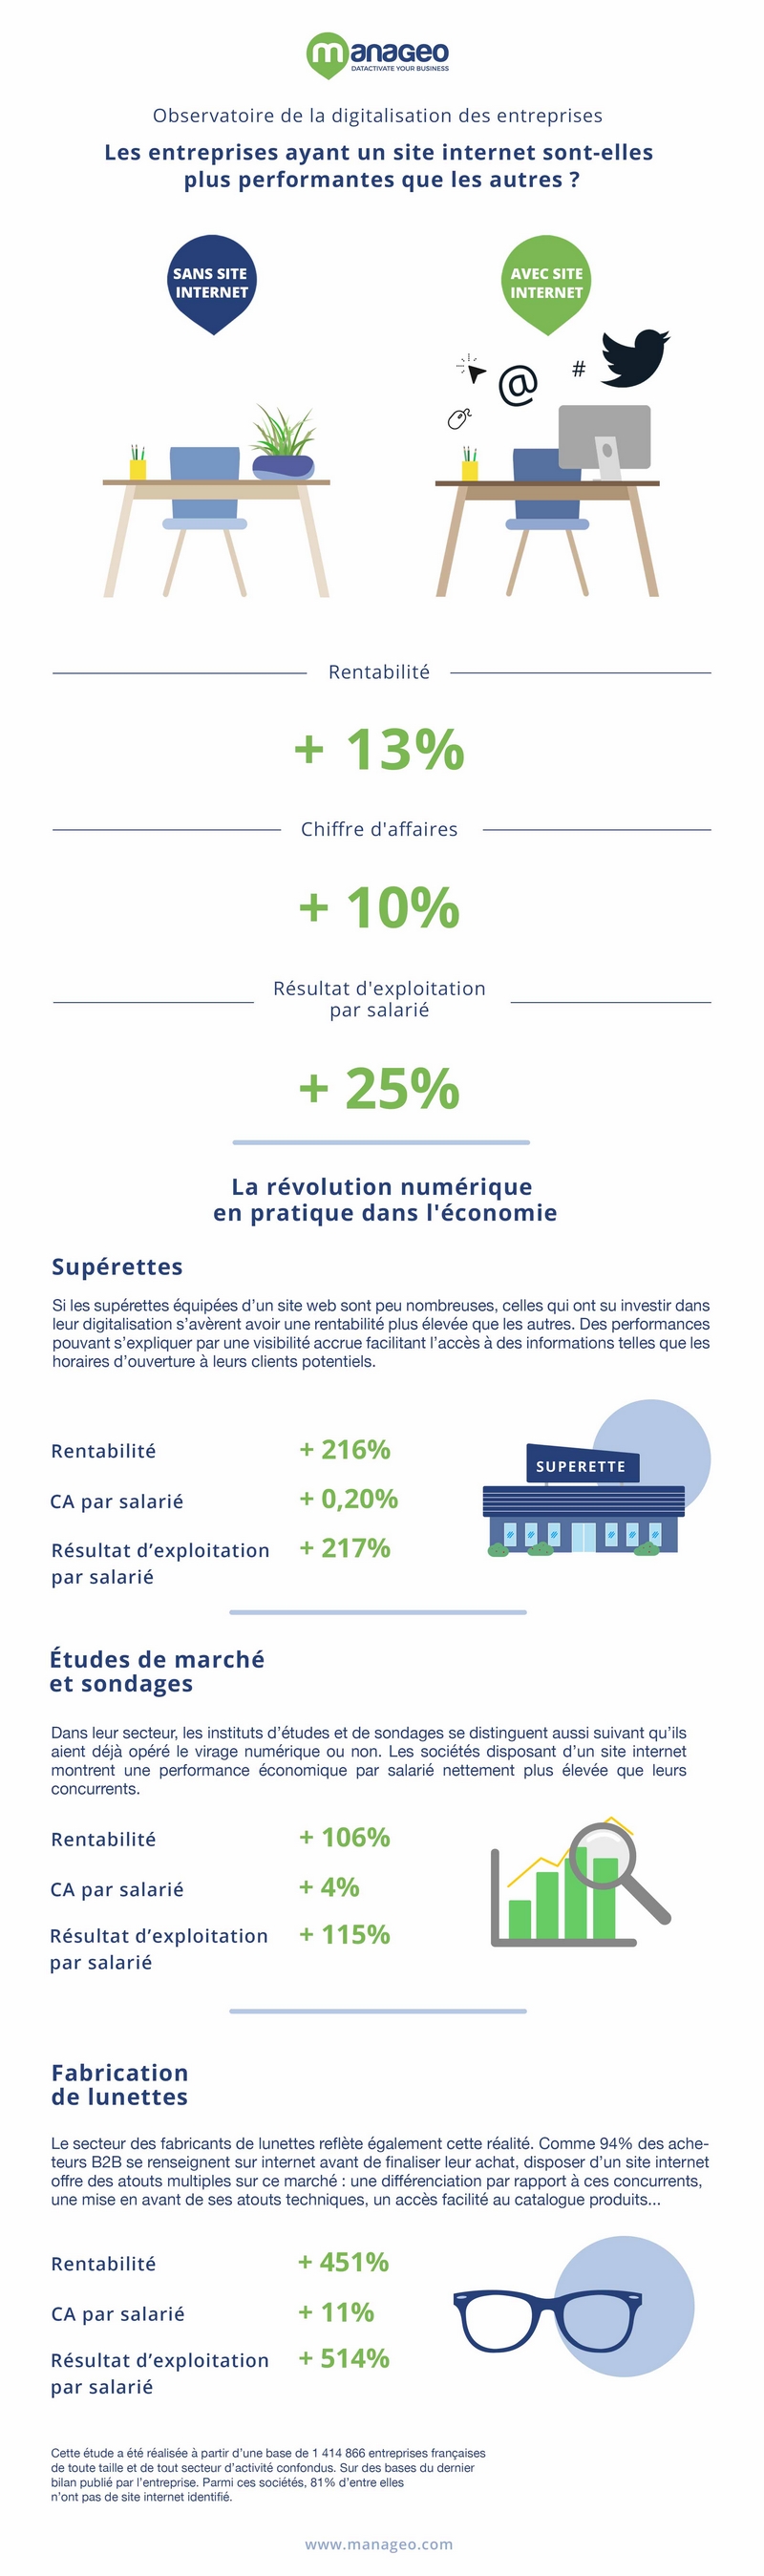 Observatoire de la digitalisation des entreprises françaises (Manageo)